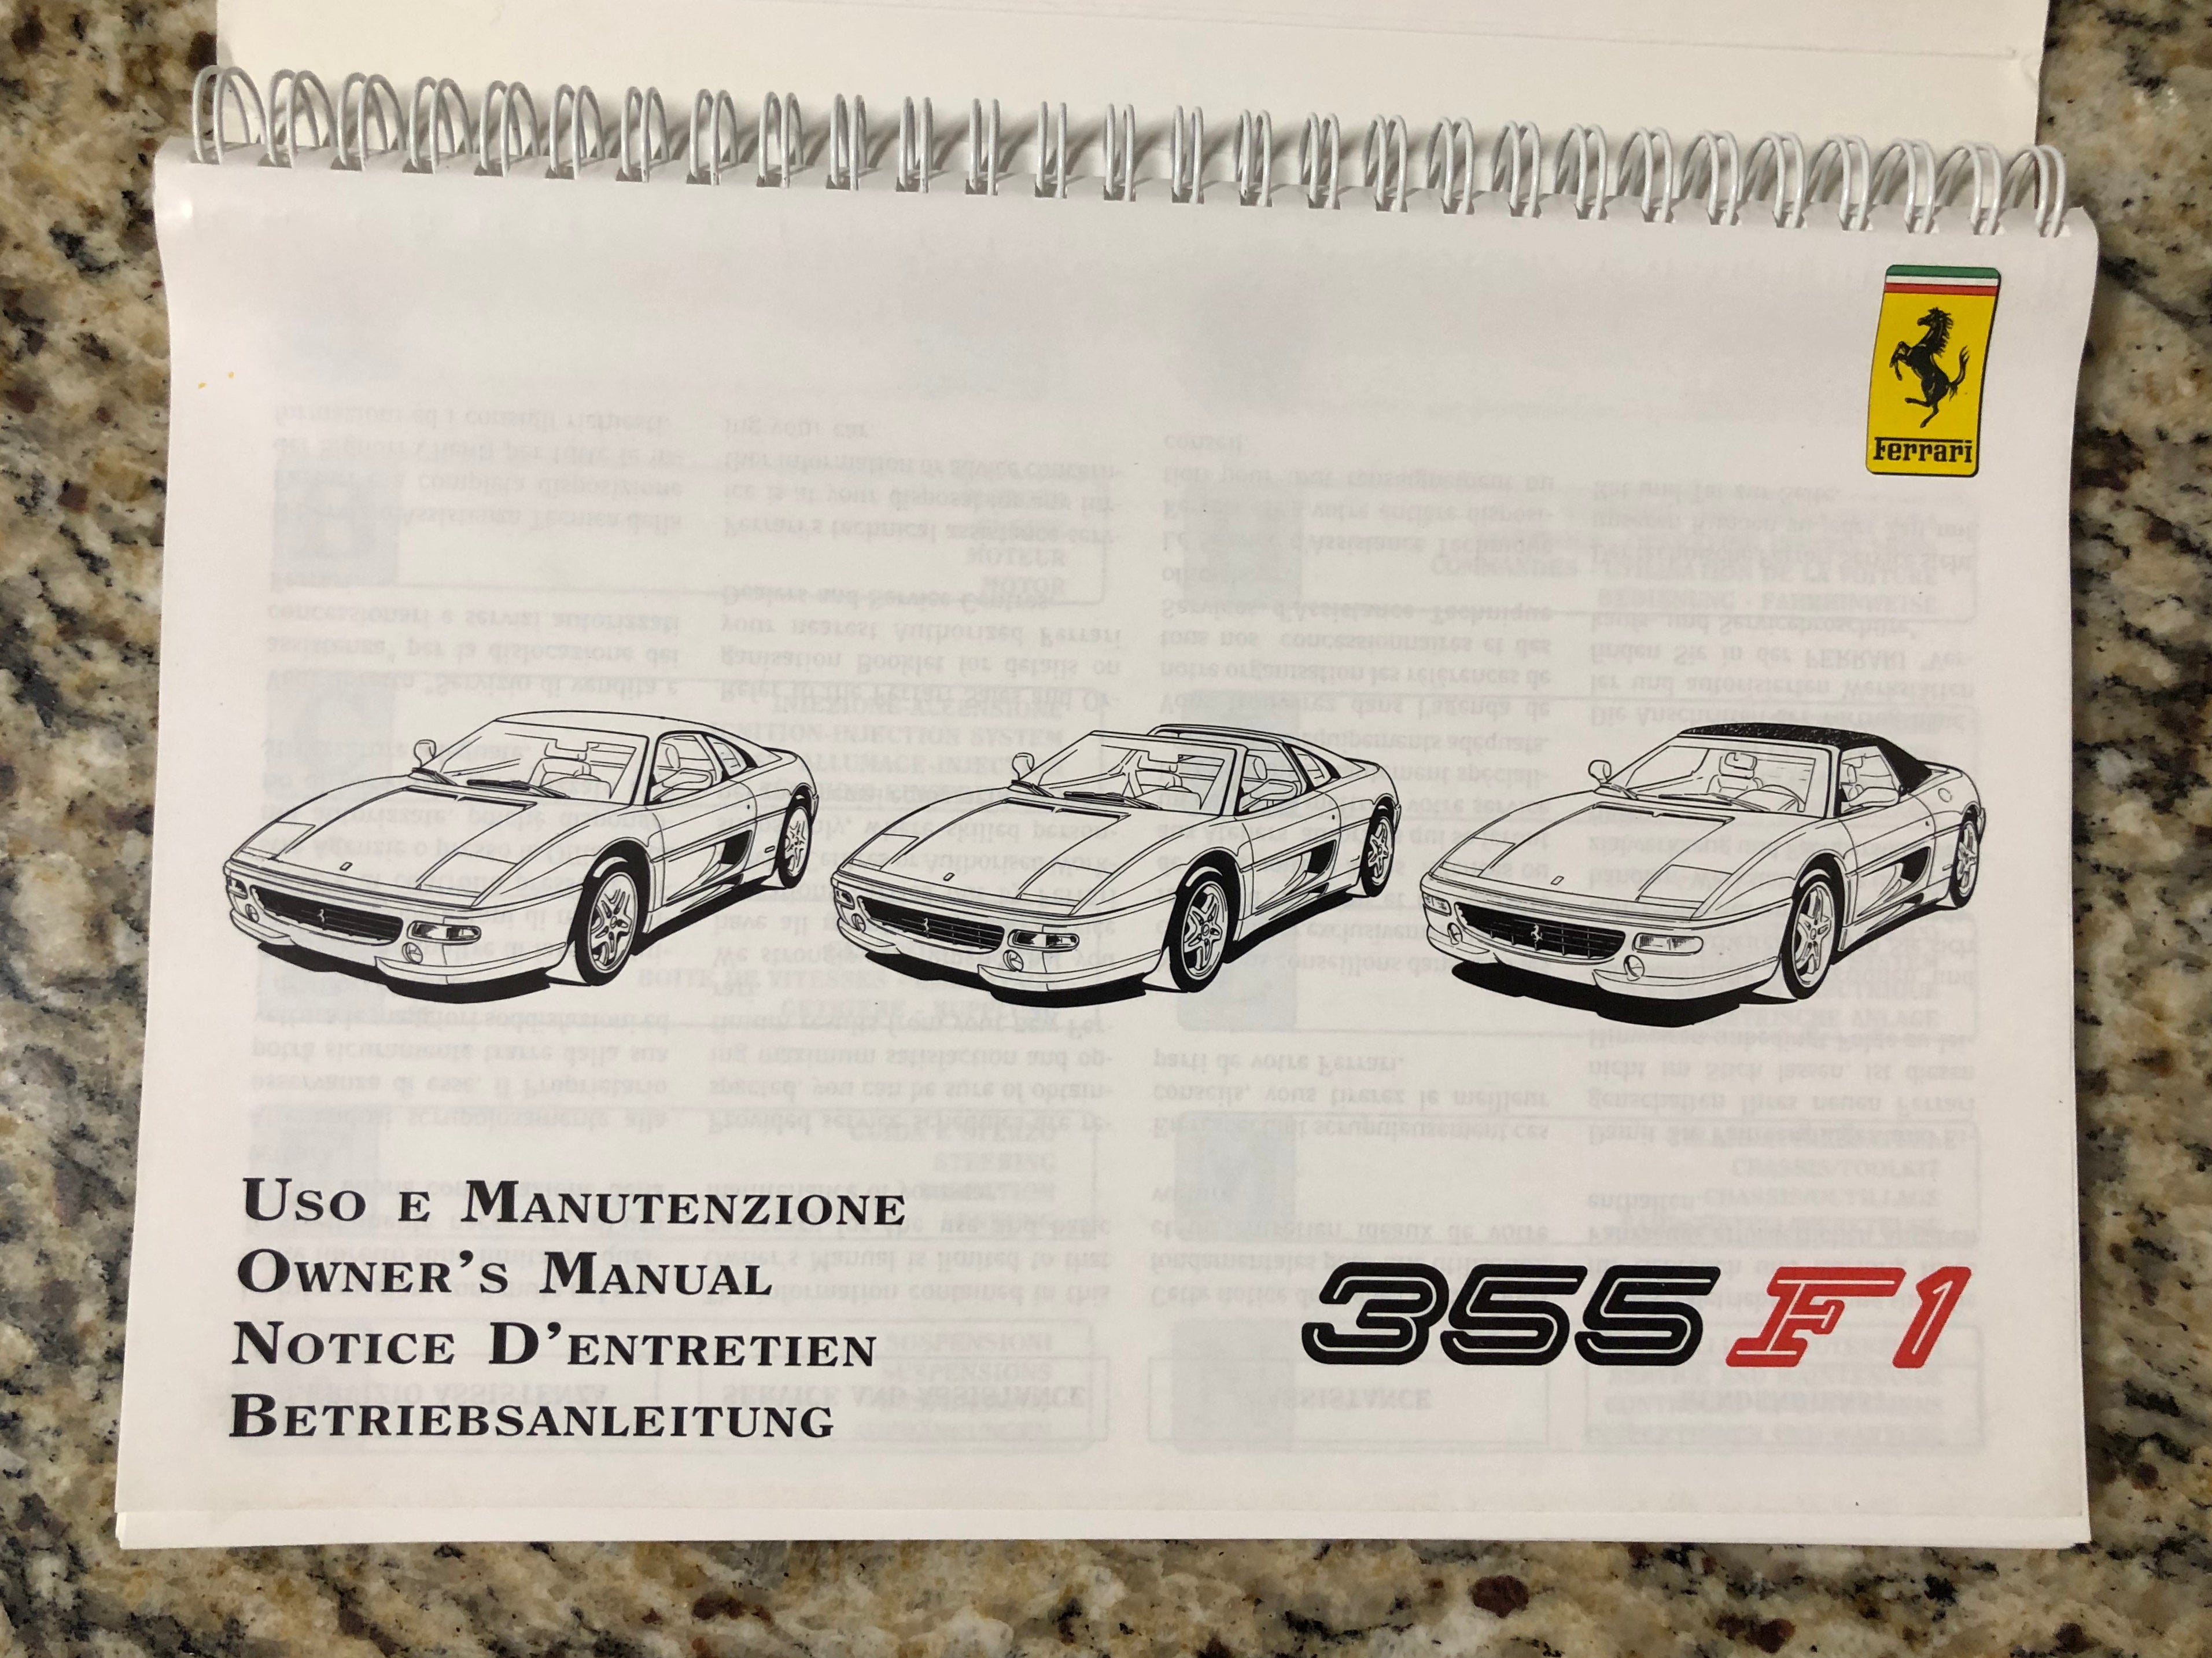 Ferrari 355 F1 Owners Manual Factory Original